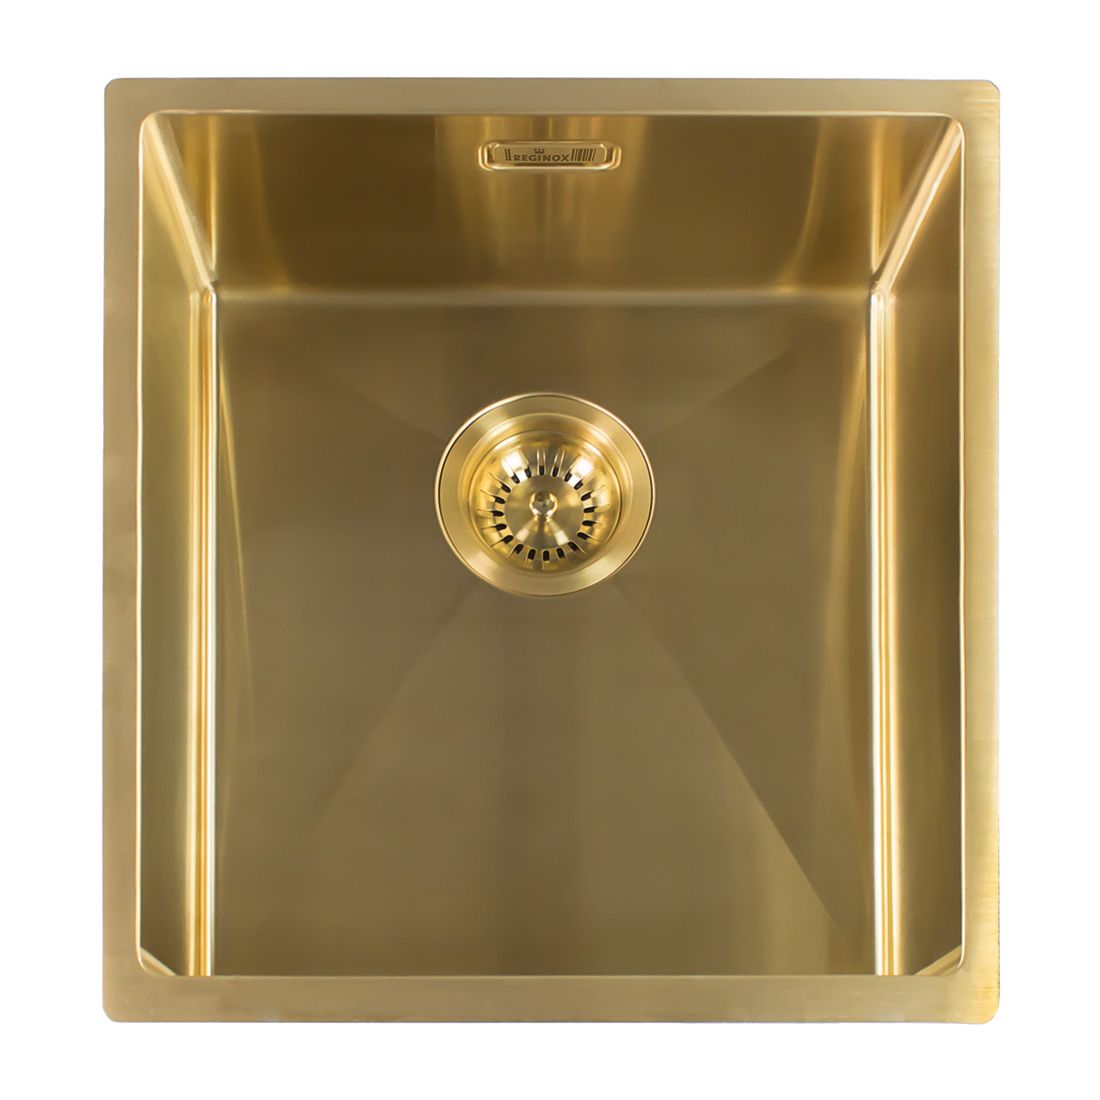 Reginox MIAMI 1.0 Single Bowl Copper Undermount Kitchen Sink 40x40cm Tap & Waste 